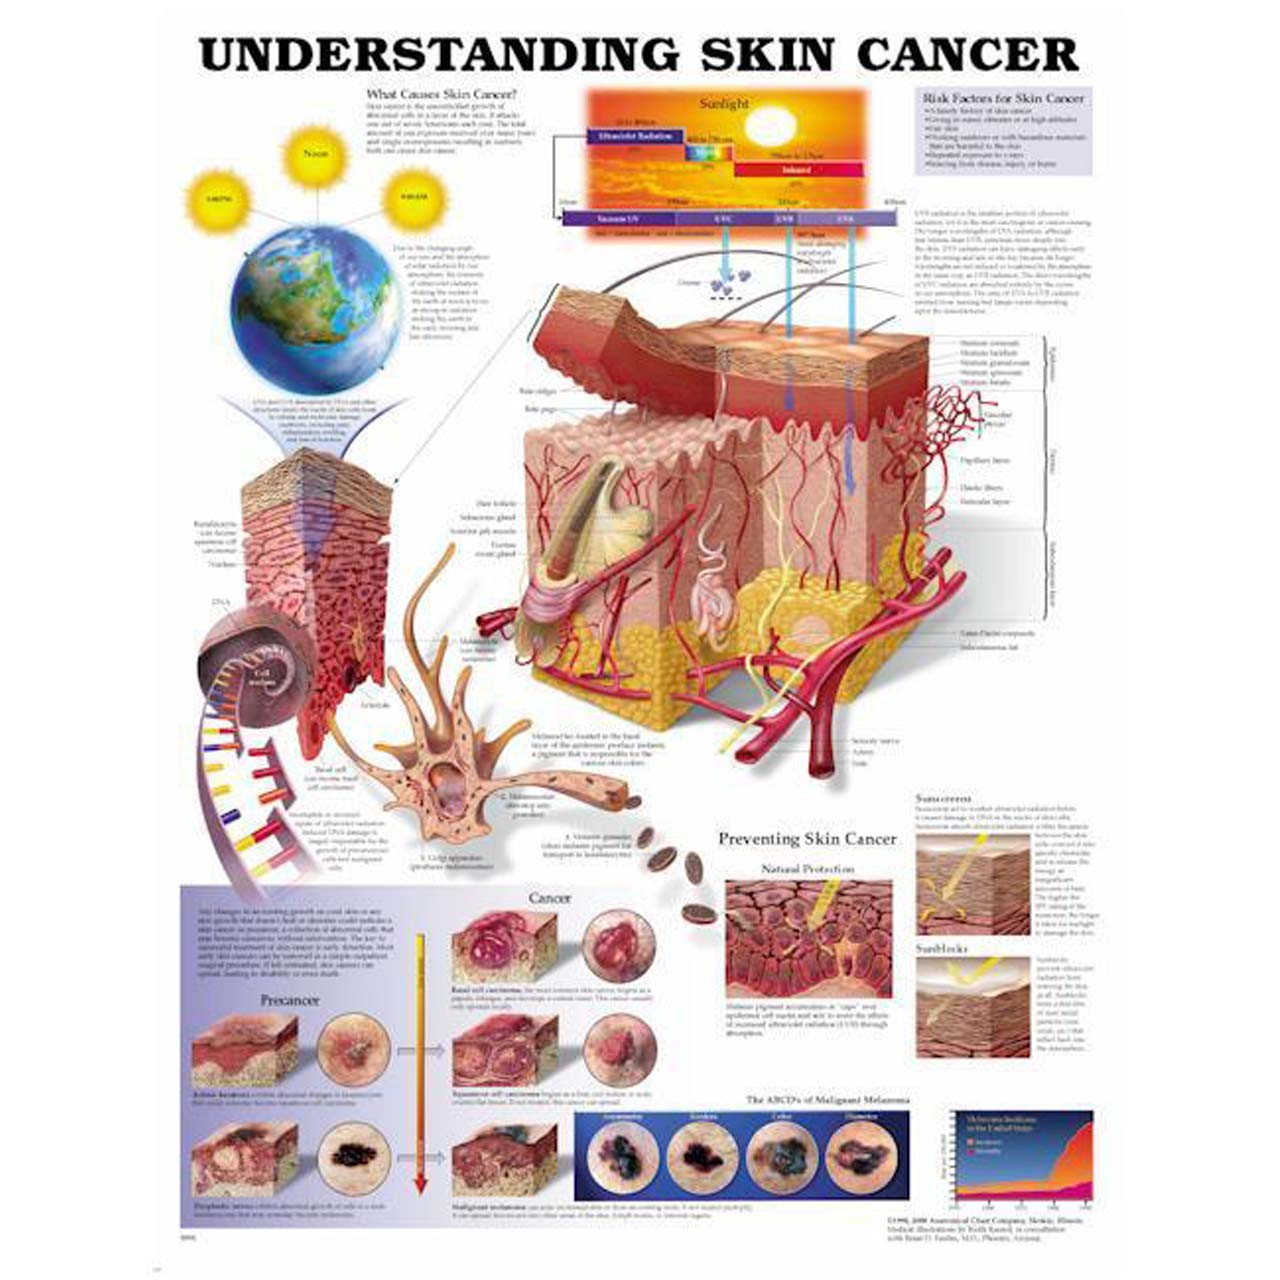 Cancer Chart